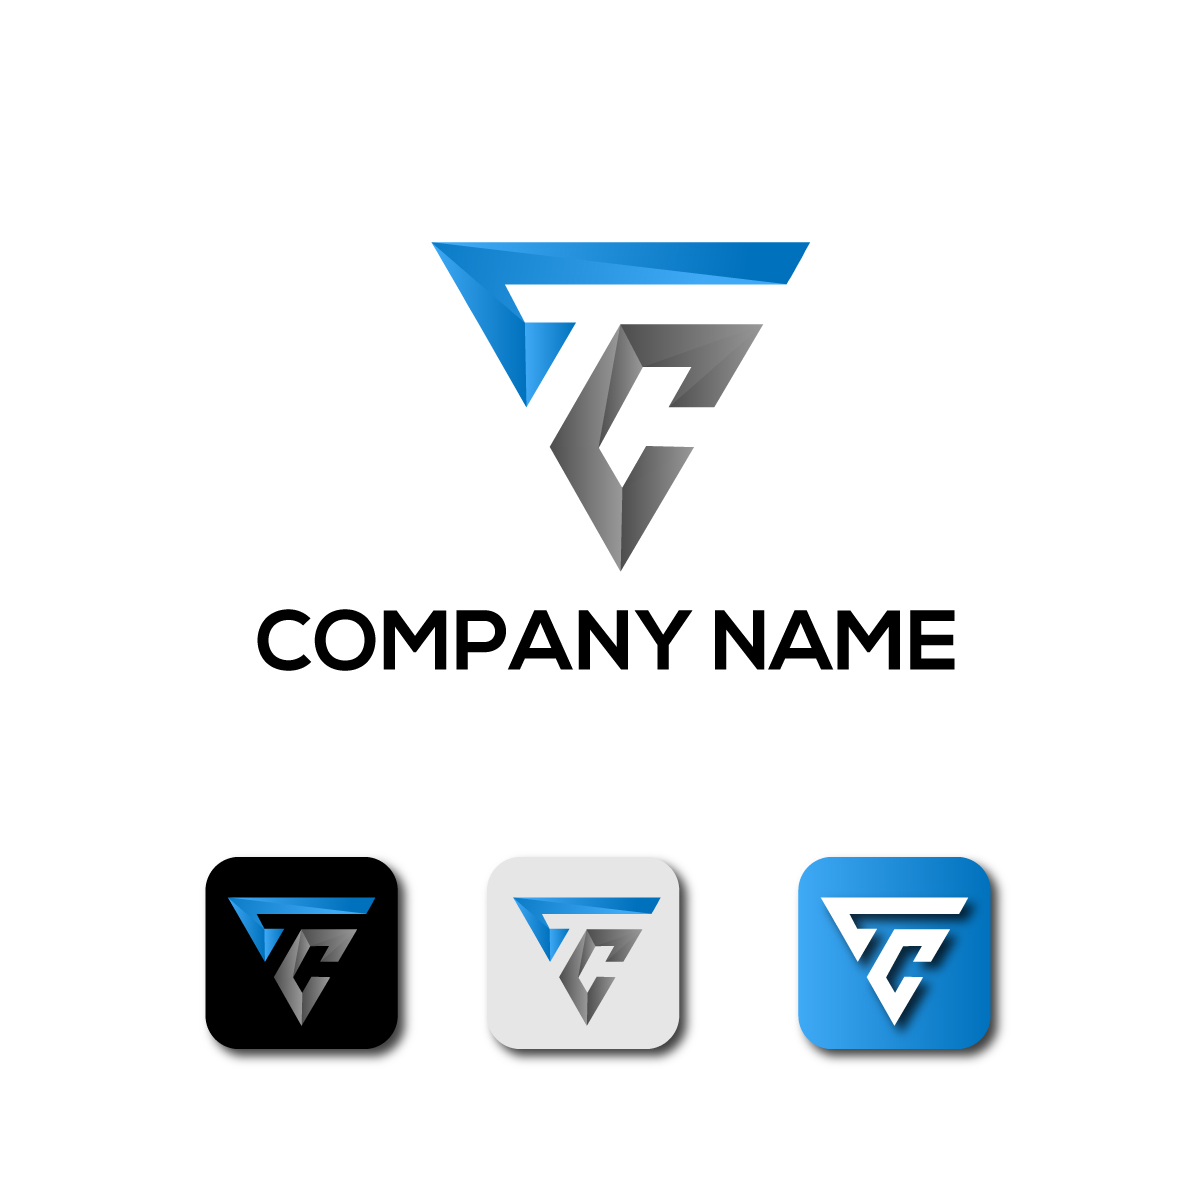 Professional, Upmarket, Manufacturer Logo Design for 